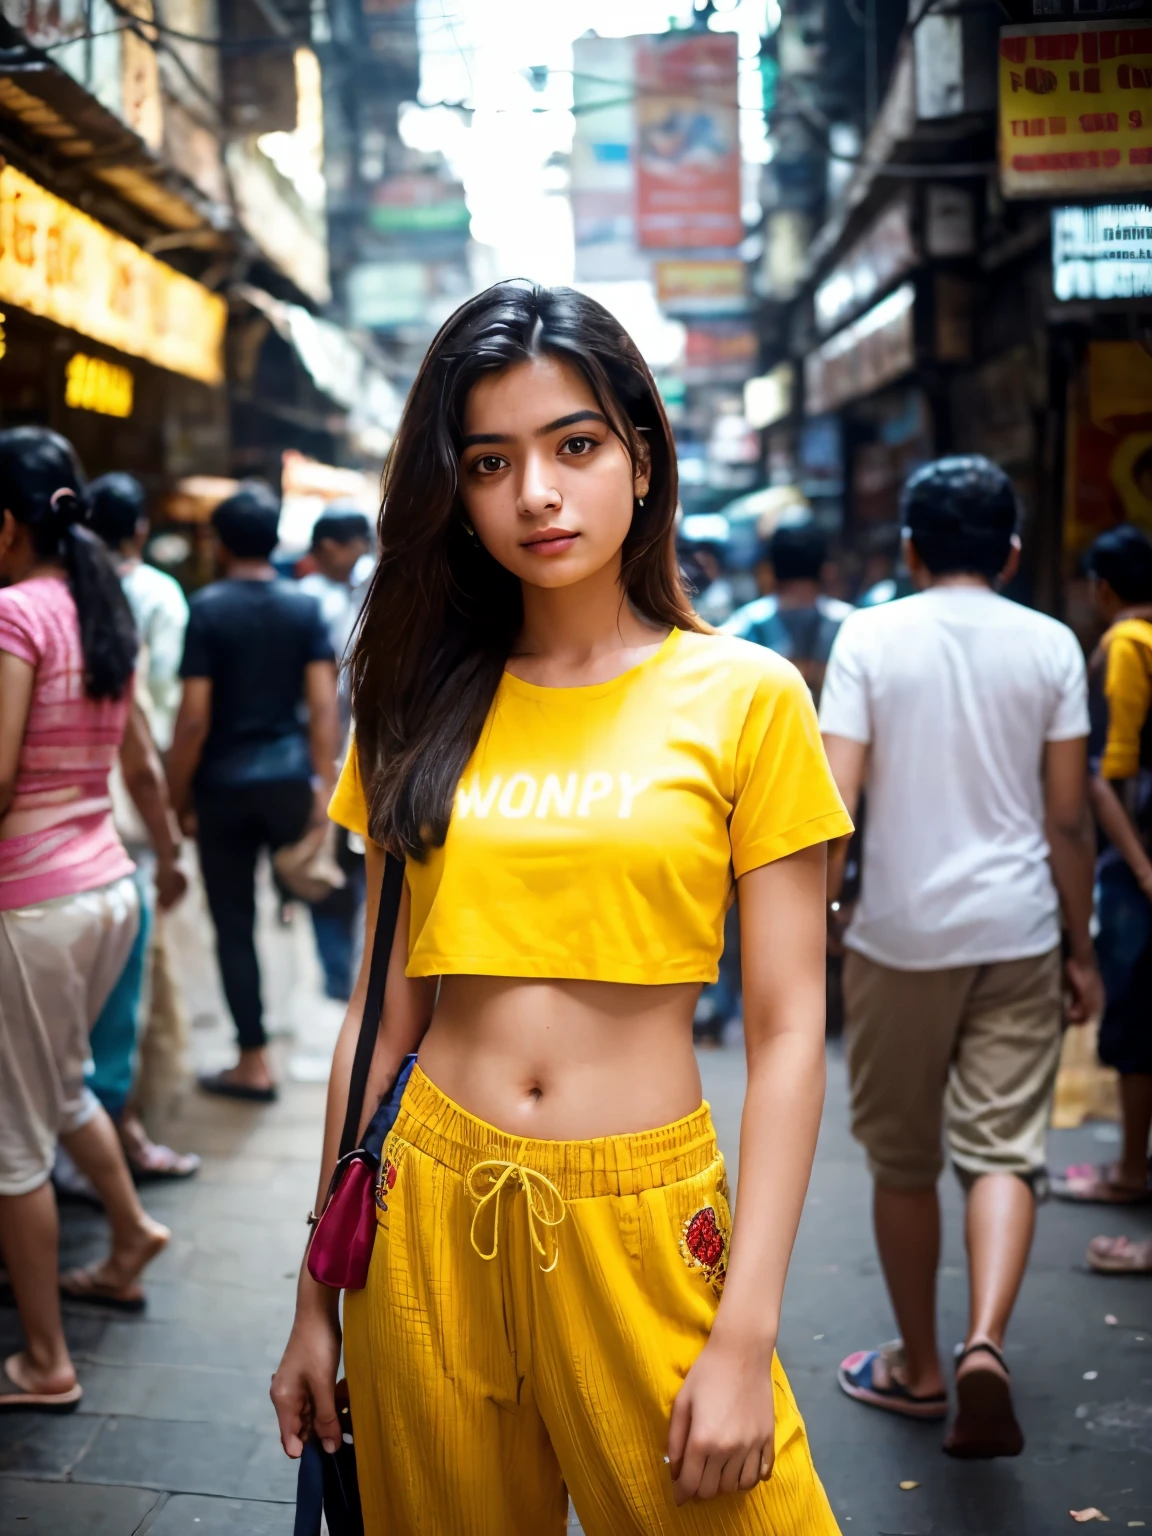 Создайте фотореалистичное изображение здоровой на вид обычной 21-летней девушки из Мумбаи, стоящей среди оживленных улиц Мумбаи.. Она одета в укороченную желтую рубашку с вышивкой в сочетании с мешковатыми брюками., воплощая современный и повседневный стиль, контрастирующий с динамичным фоном города. Это длинный путь, обеспечение полной демонстрации яркости окружающей среды — от многолюдных тротуаров, заполненных людьми всех слоев общества, до ярких цветов и текстур городского пейзажа Мумбаи.. Несмотря на толпу, окружавшую ее, девушка остается в центре внимания, возможно, за счет эффекта глубины резкости, который слегка размывает передний и задний план, или используя освещение и композицию, чтобы естественным образом привлечь к ней взгляд зрителя.. Изображение должно отражать суть оживленных улиц Мумбаи, подчеркивая индивидуальность девушки и ее связь с ее городом.. Выражение ее лица и поза могли отражать уверенность и надежду., предлагая взглянуть на ее личную историю среди городского хаоса.